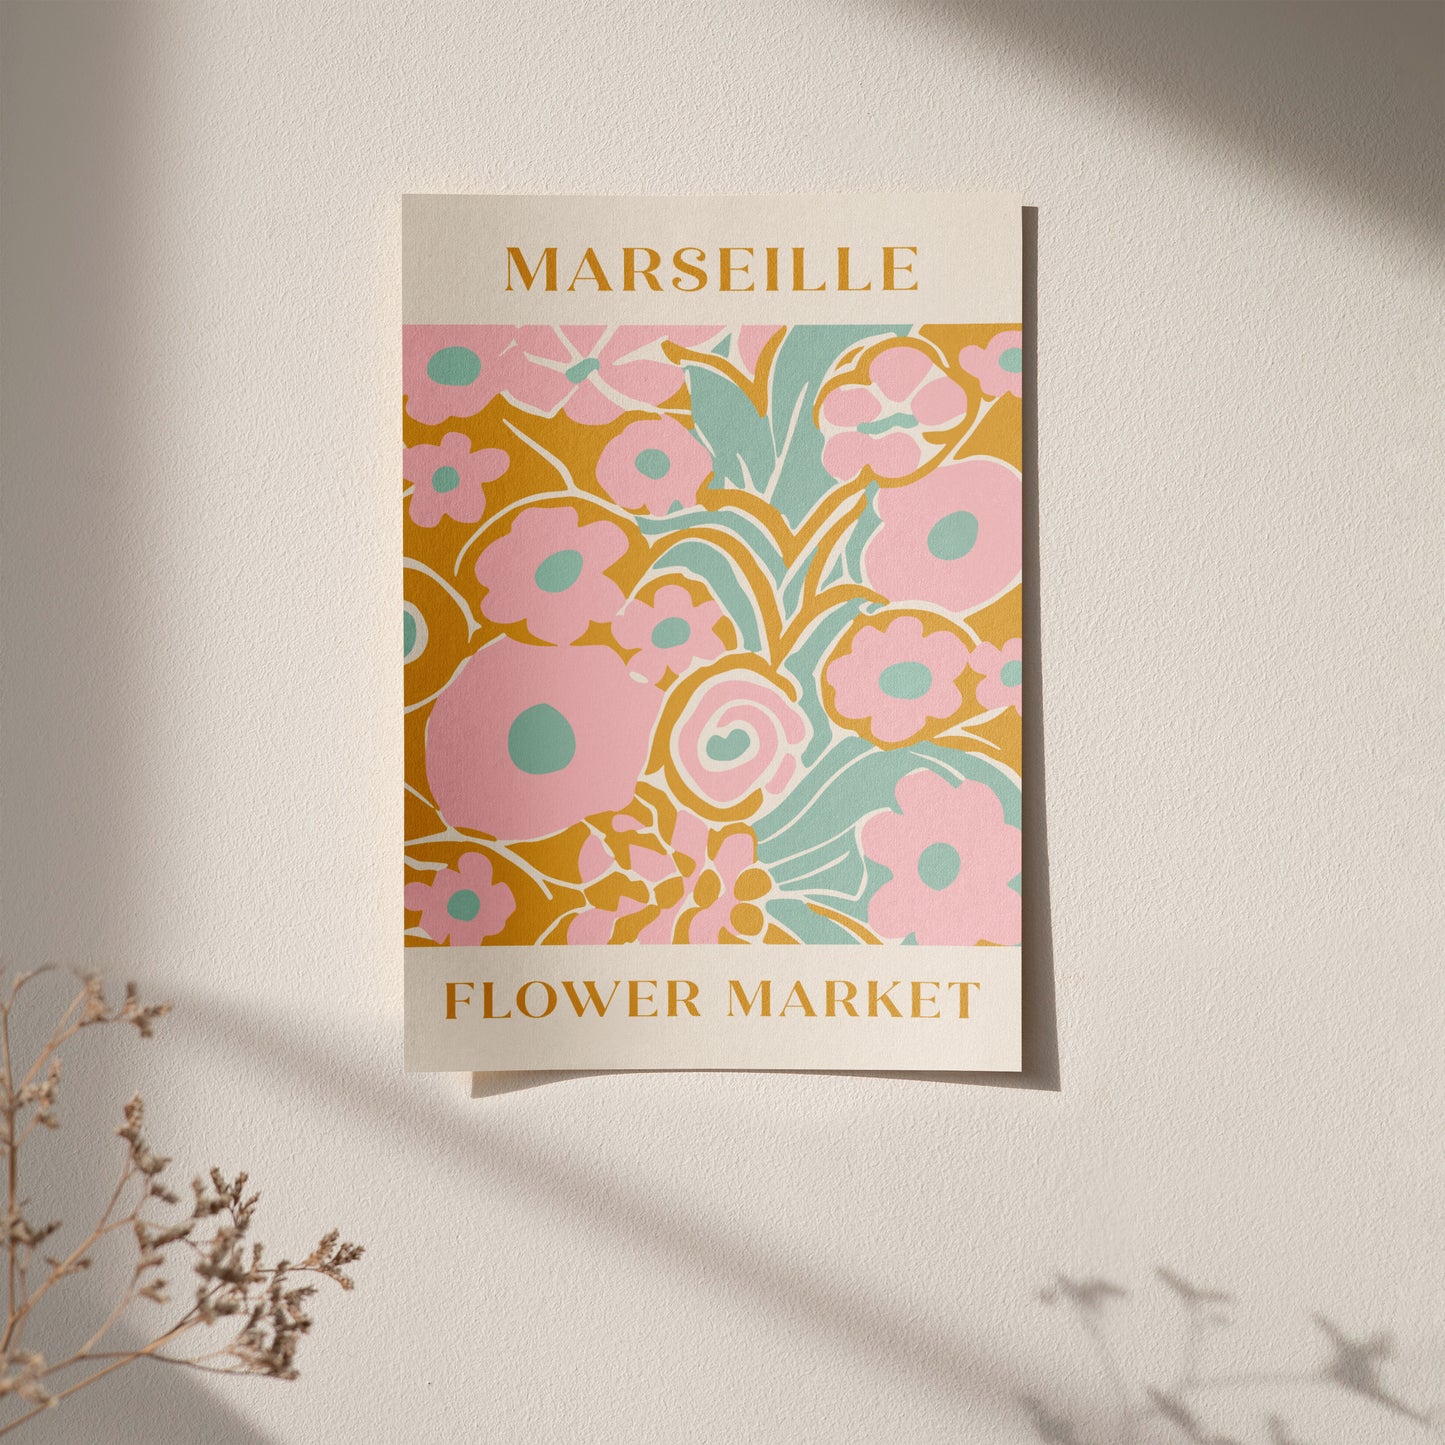 Marseille Flower Market Poster